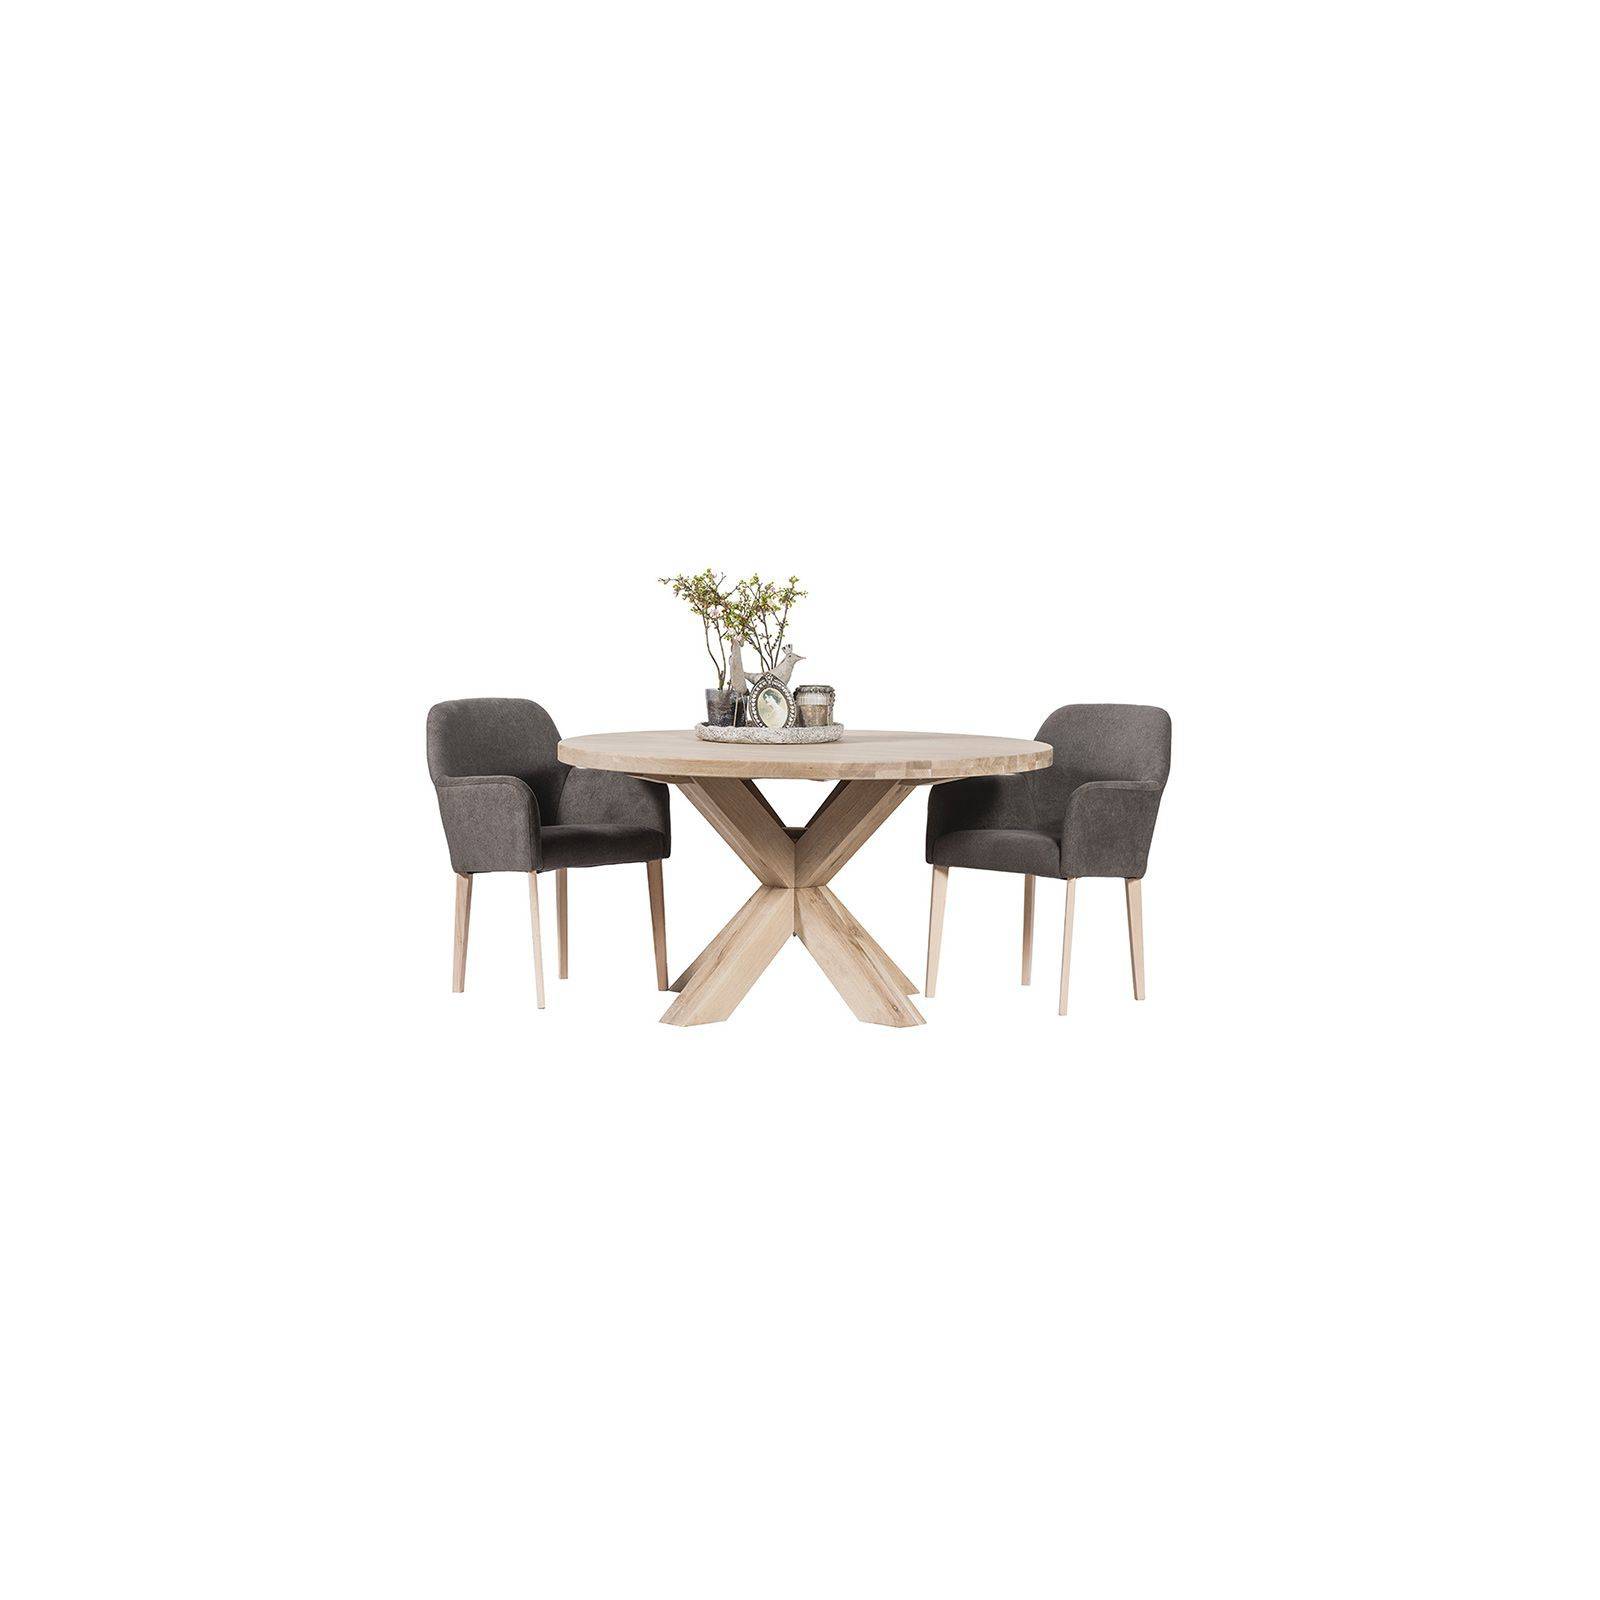 Table de salle ronde. Collection de meubles en chêne massif Séville